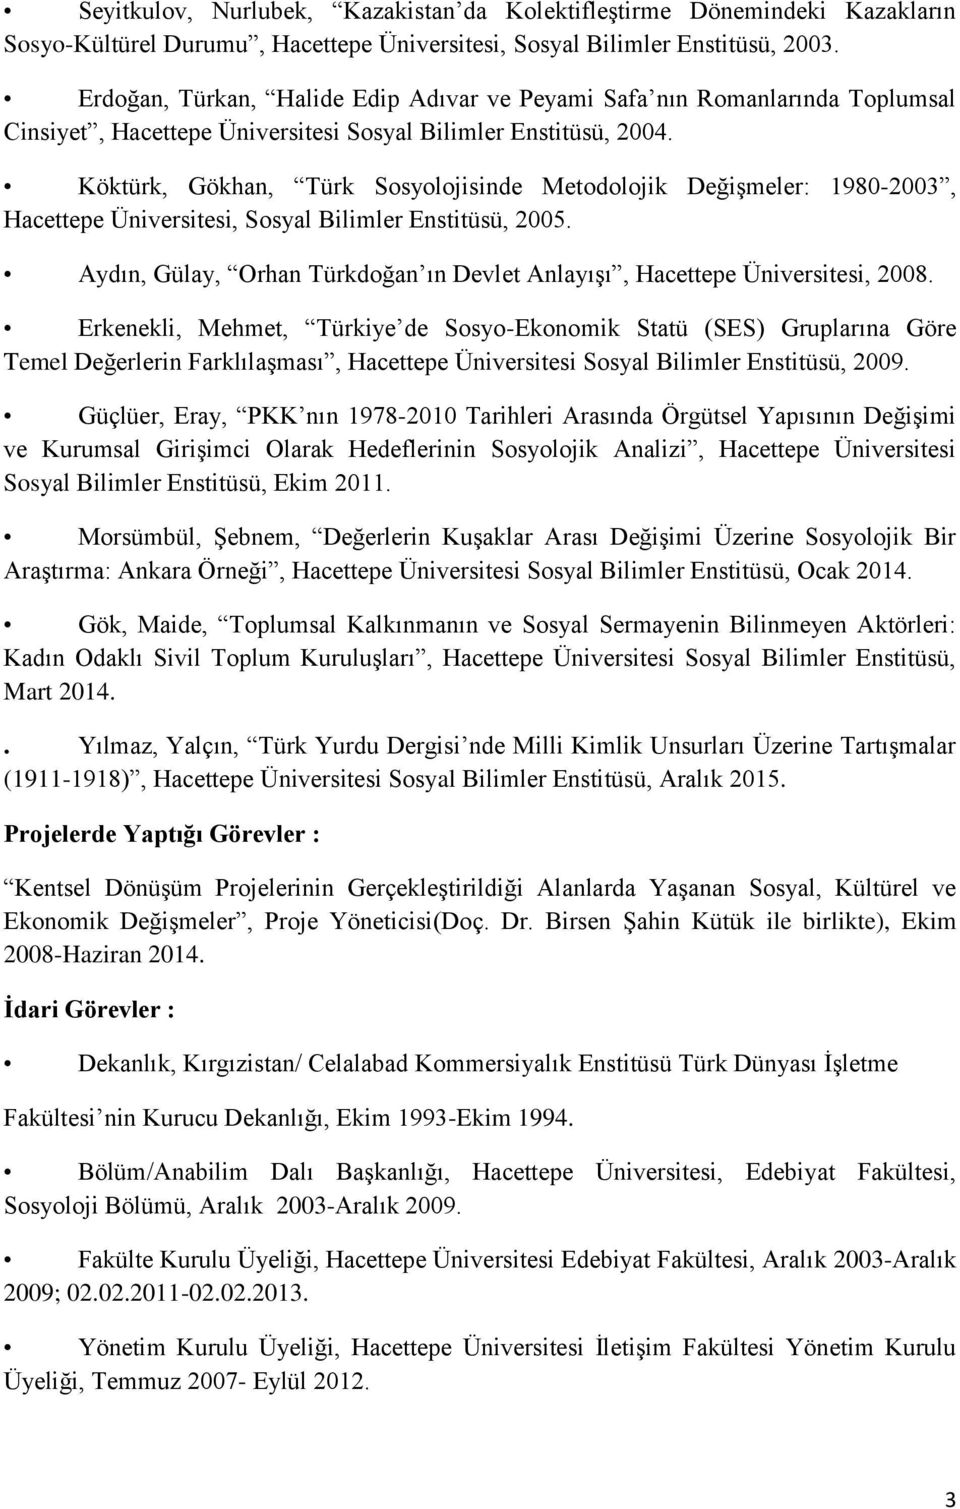 Köktürk, Gökhan, Türk Sosyolojisinde Metodolojik Değişmeler: 1980-2003, Hacettepe Üniversitesi, Sosyal Bilimler Enstitüsü, 2005.